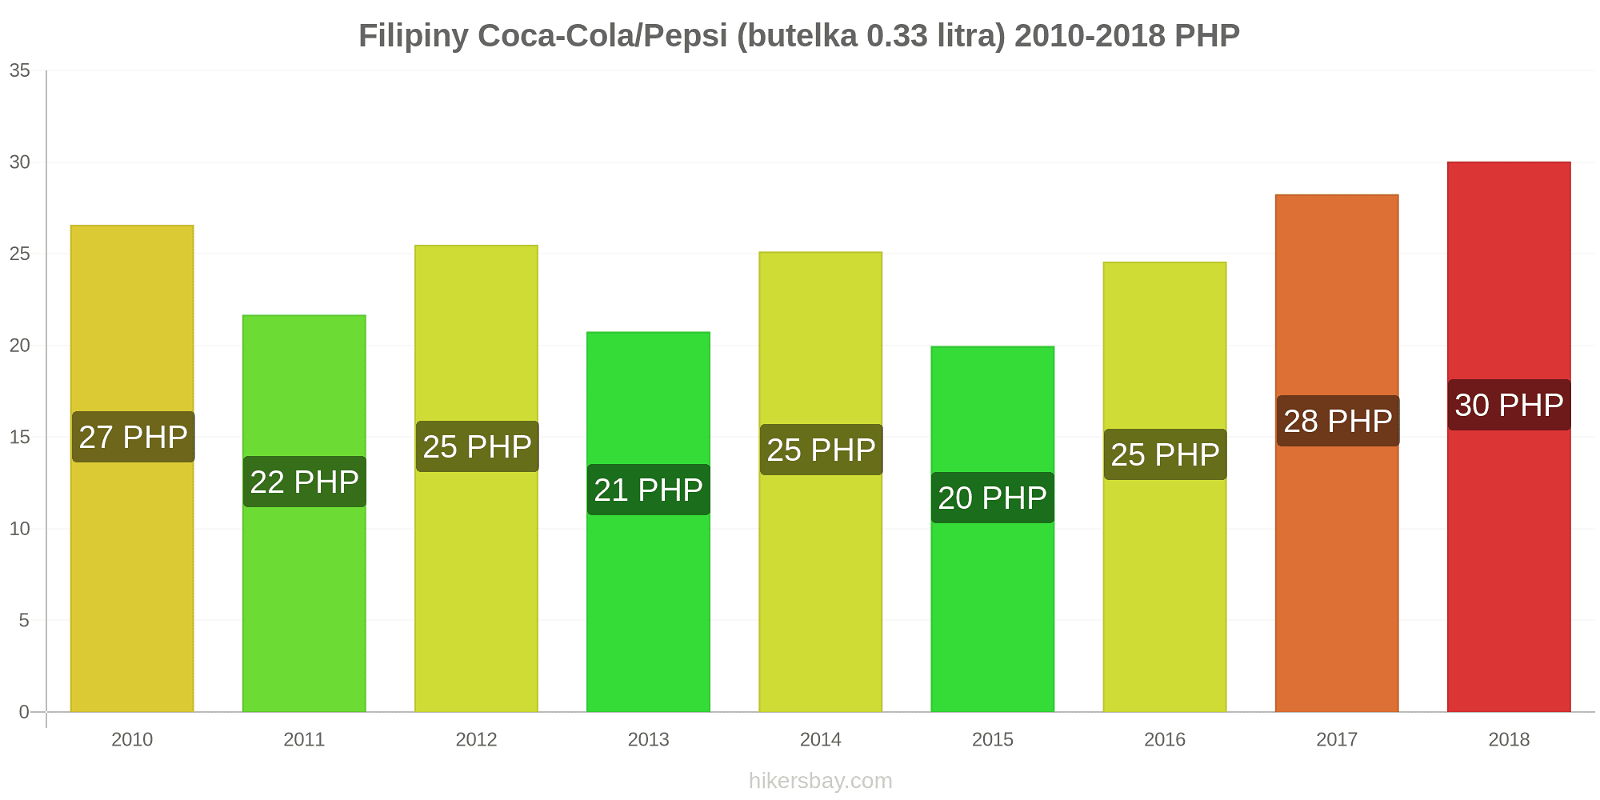 Filipiny zmiany cen Coca-Cola/Pepsi (butelka 0.33 litra) hikersbay.com